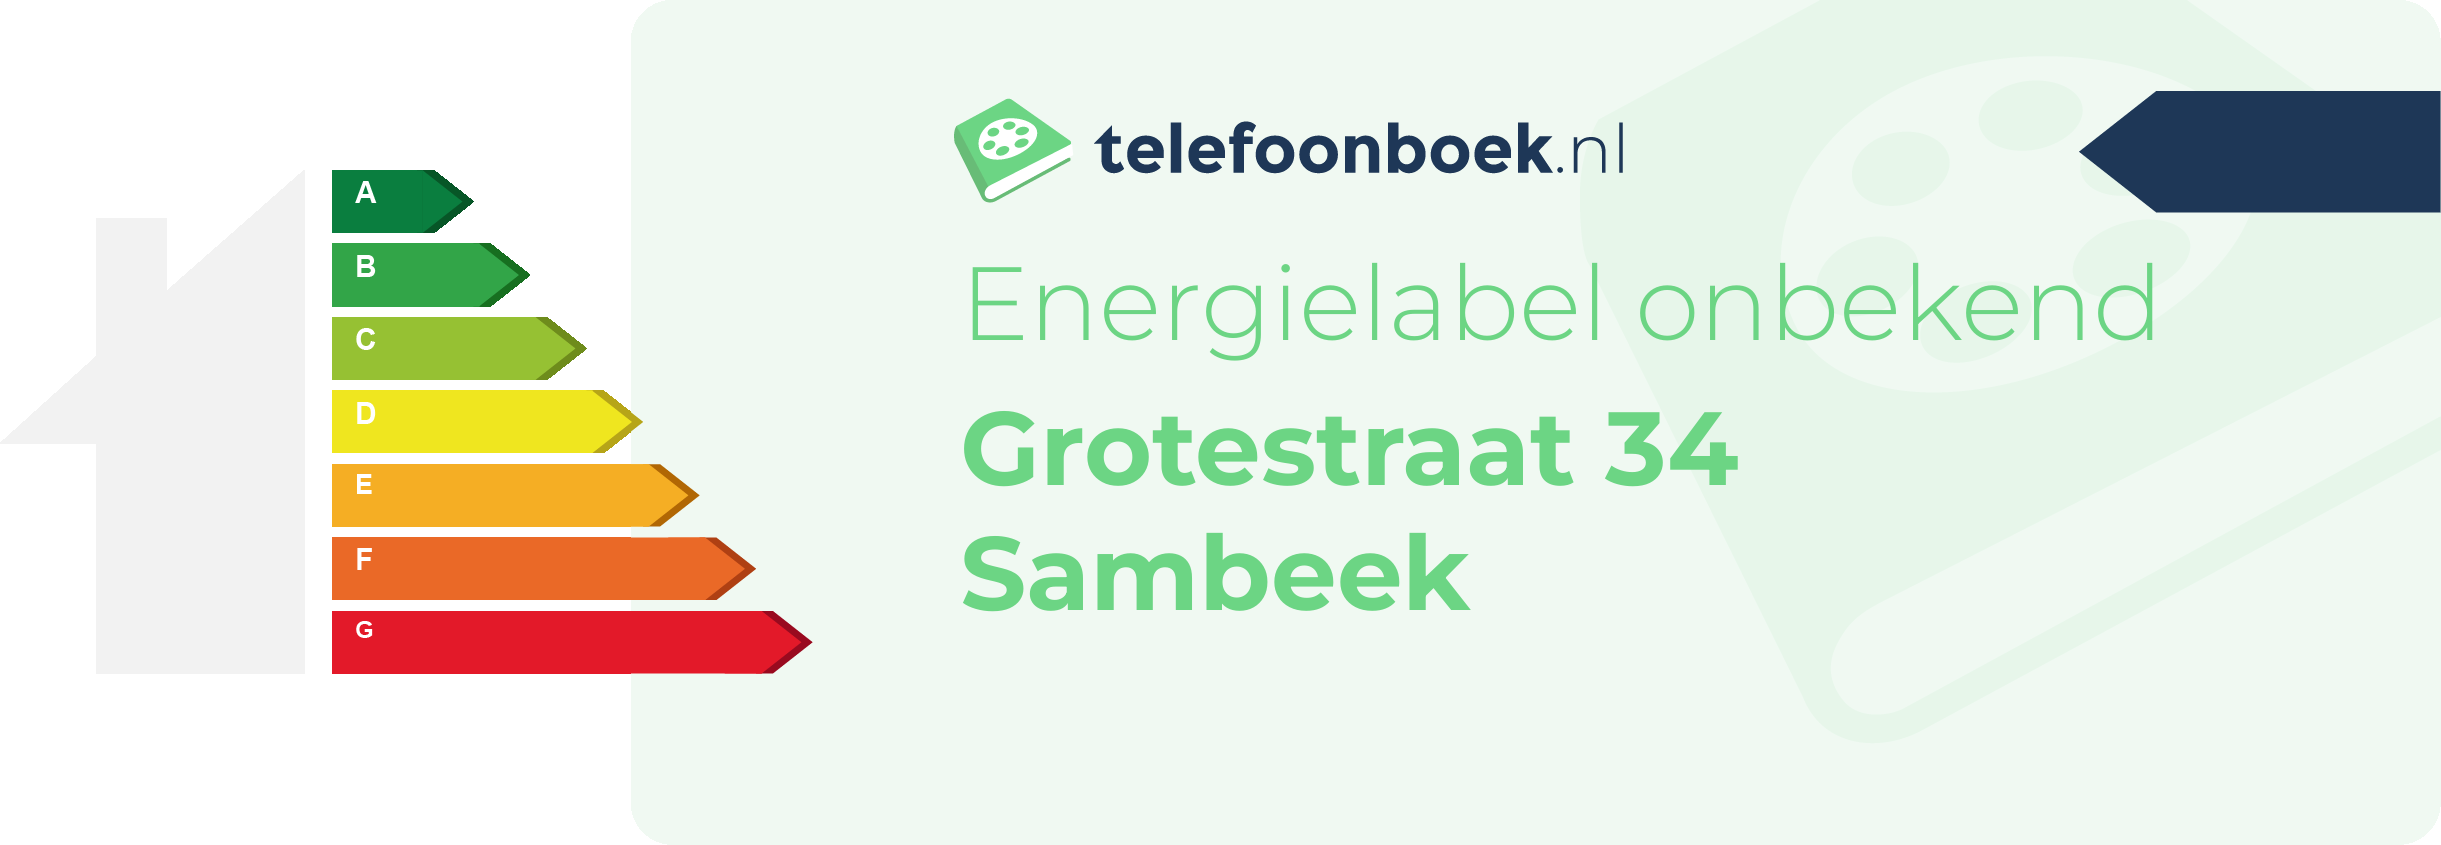 Energielabel Grotestraat 34 Sambeek